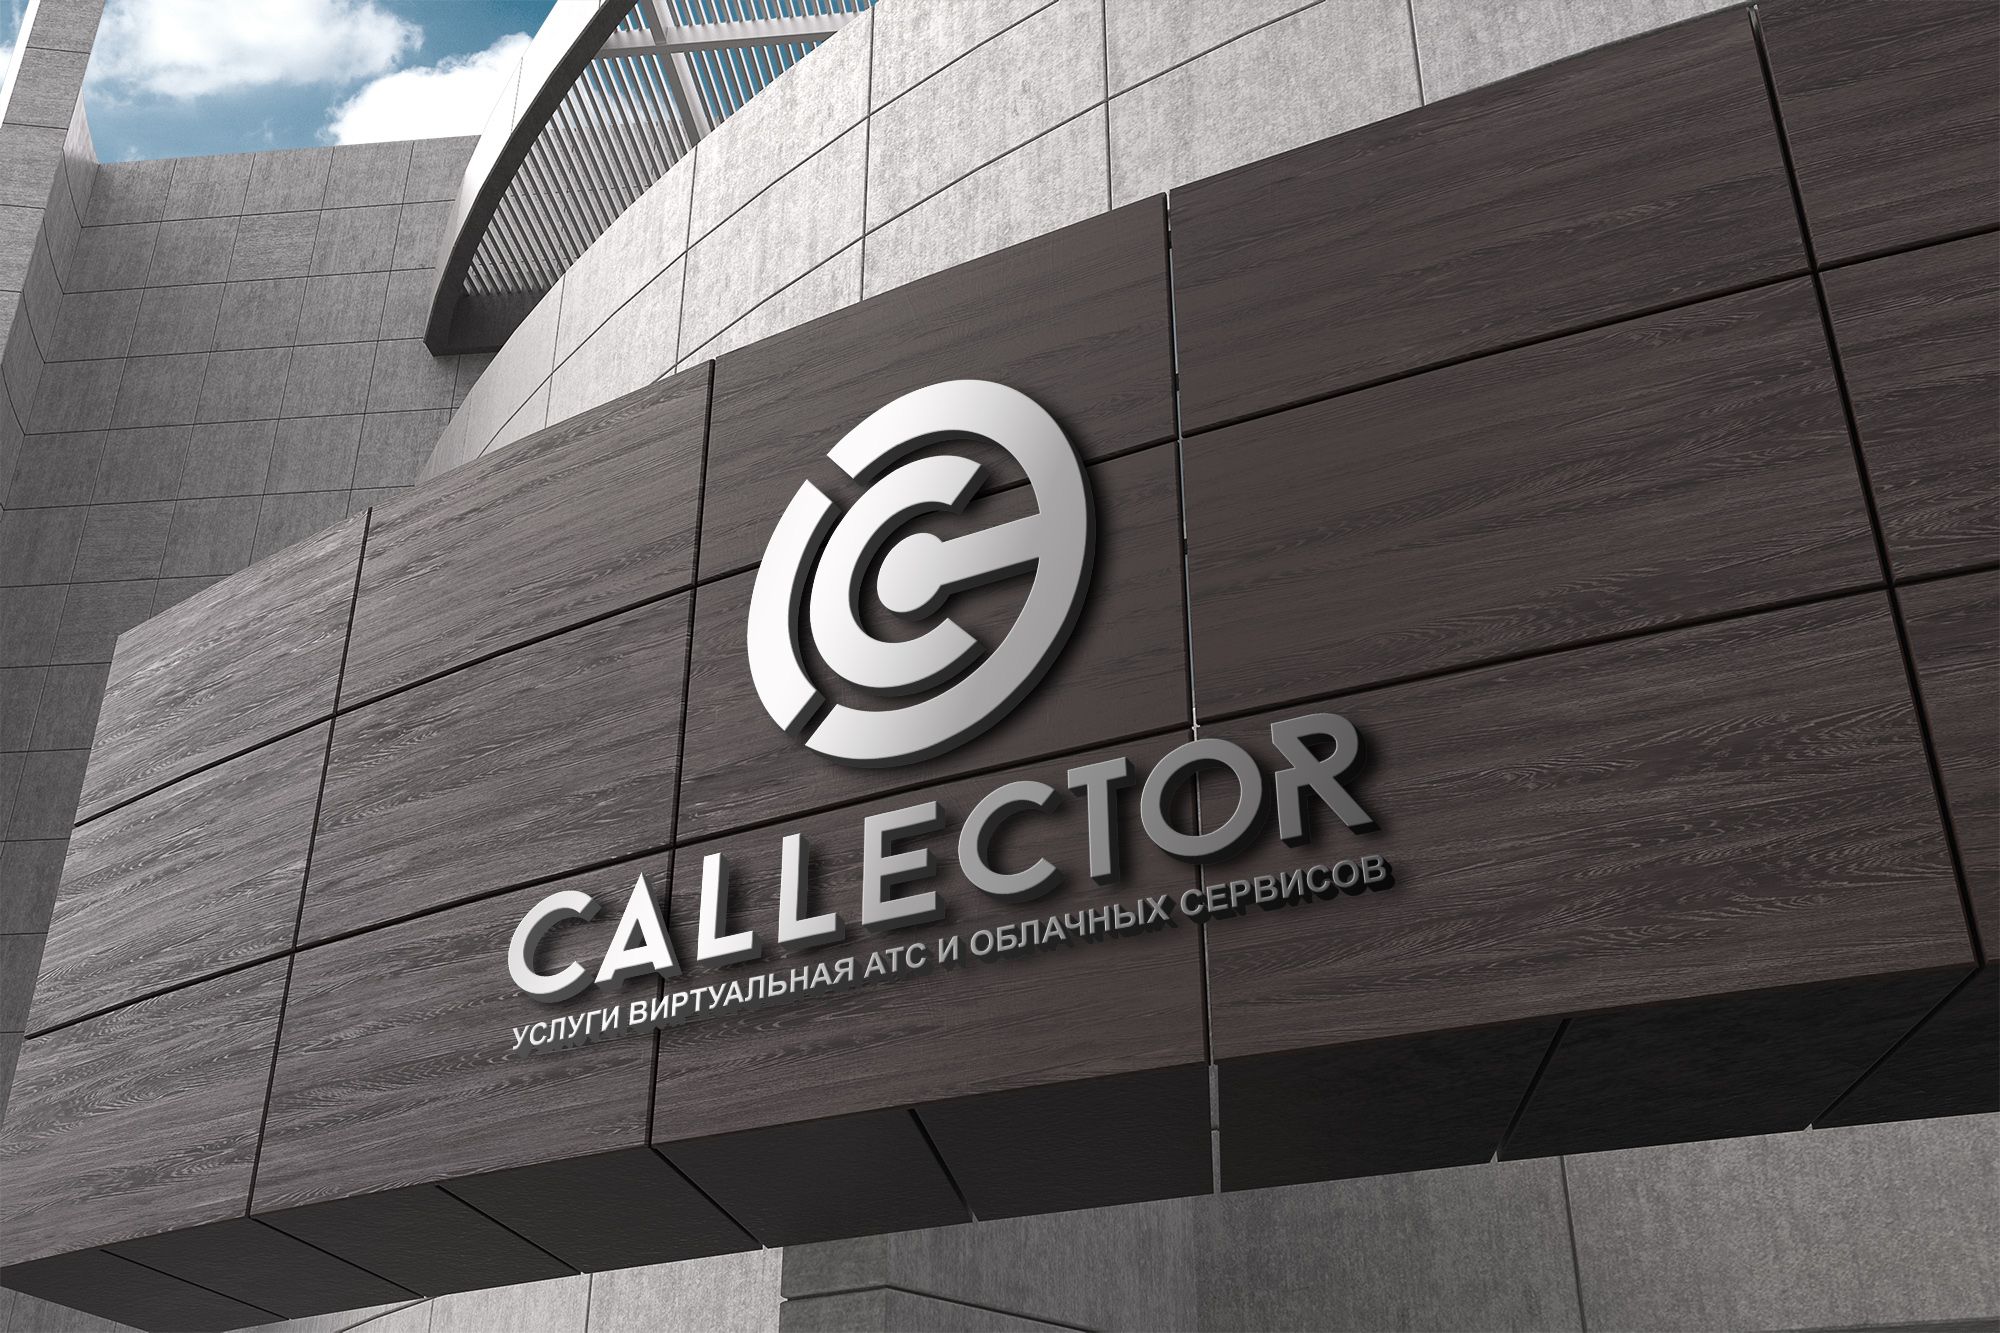 Логотип для callector  - дизайнер serz4868